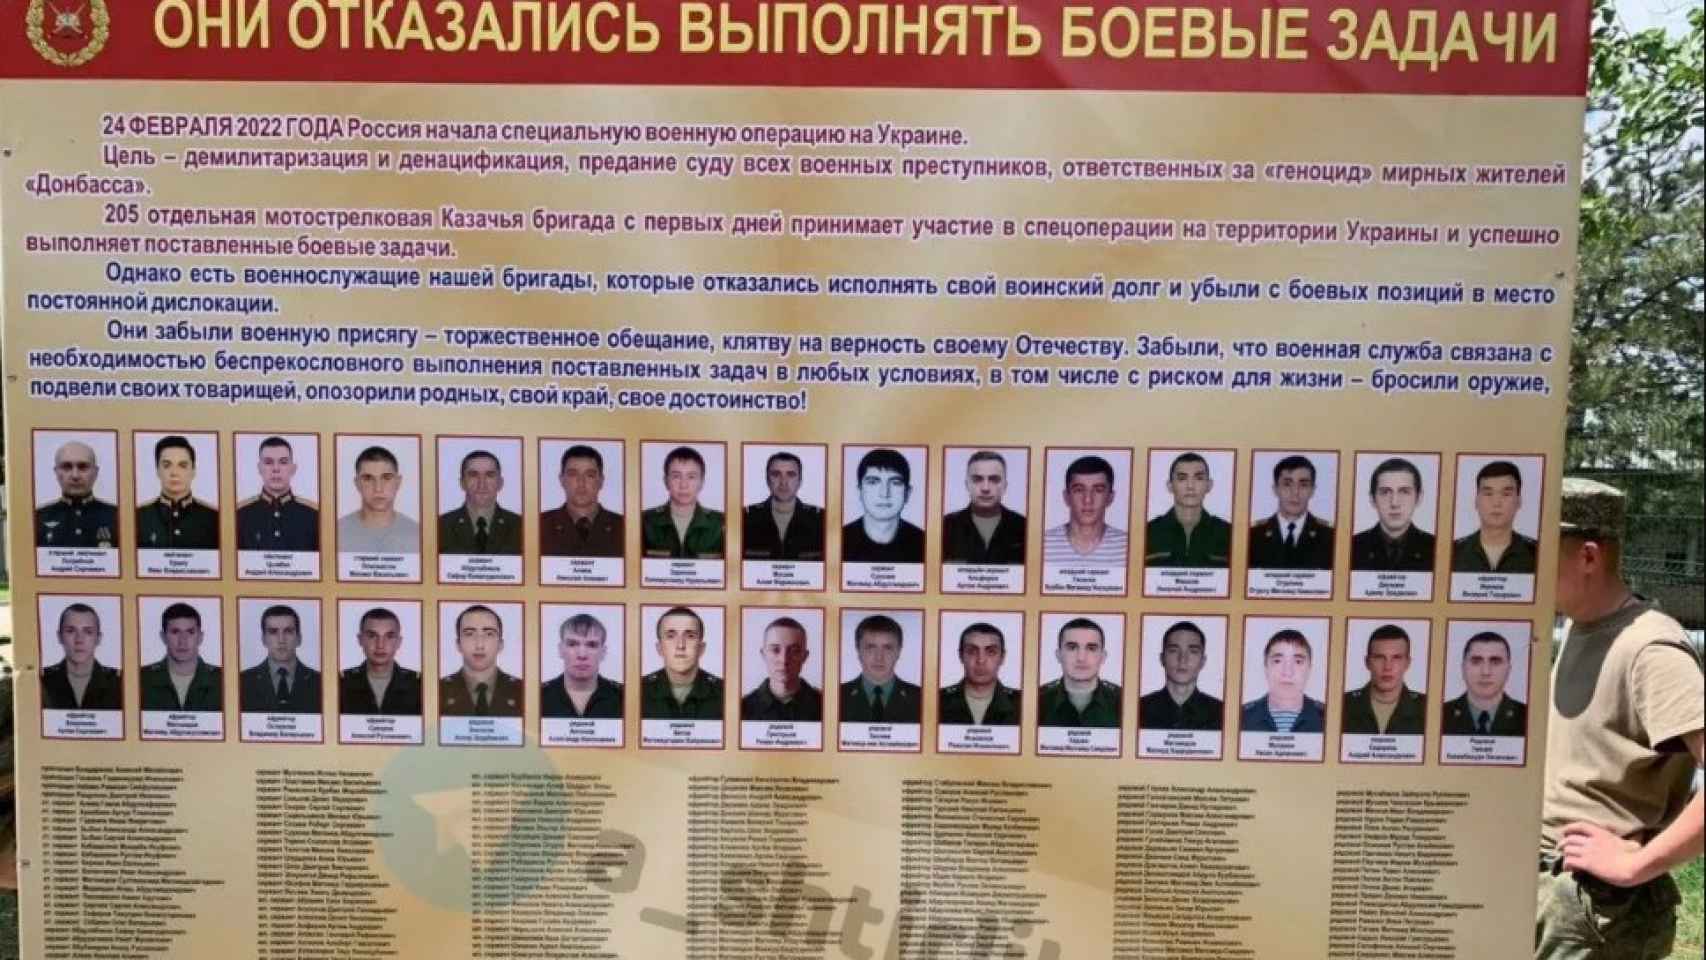 Refuseniks de la Brigada de Fusileros en la que sirve Ivaschchenko. Se negaron a combatir y sus fotos fueron expuestas en el muro de la vergüenza